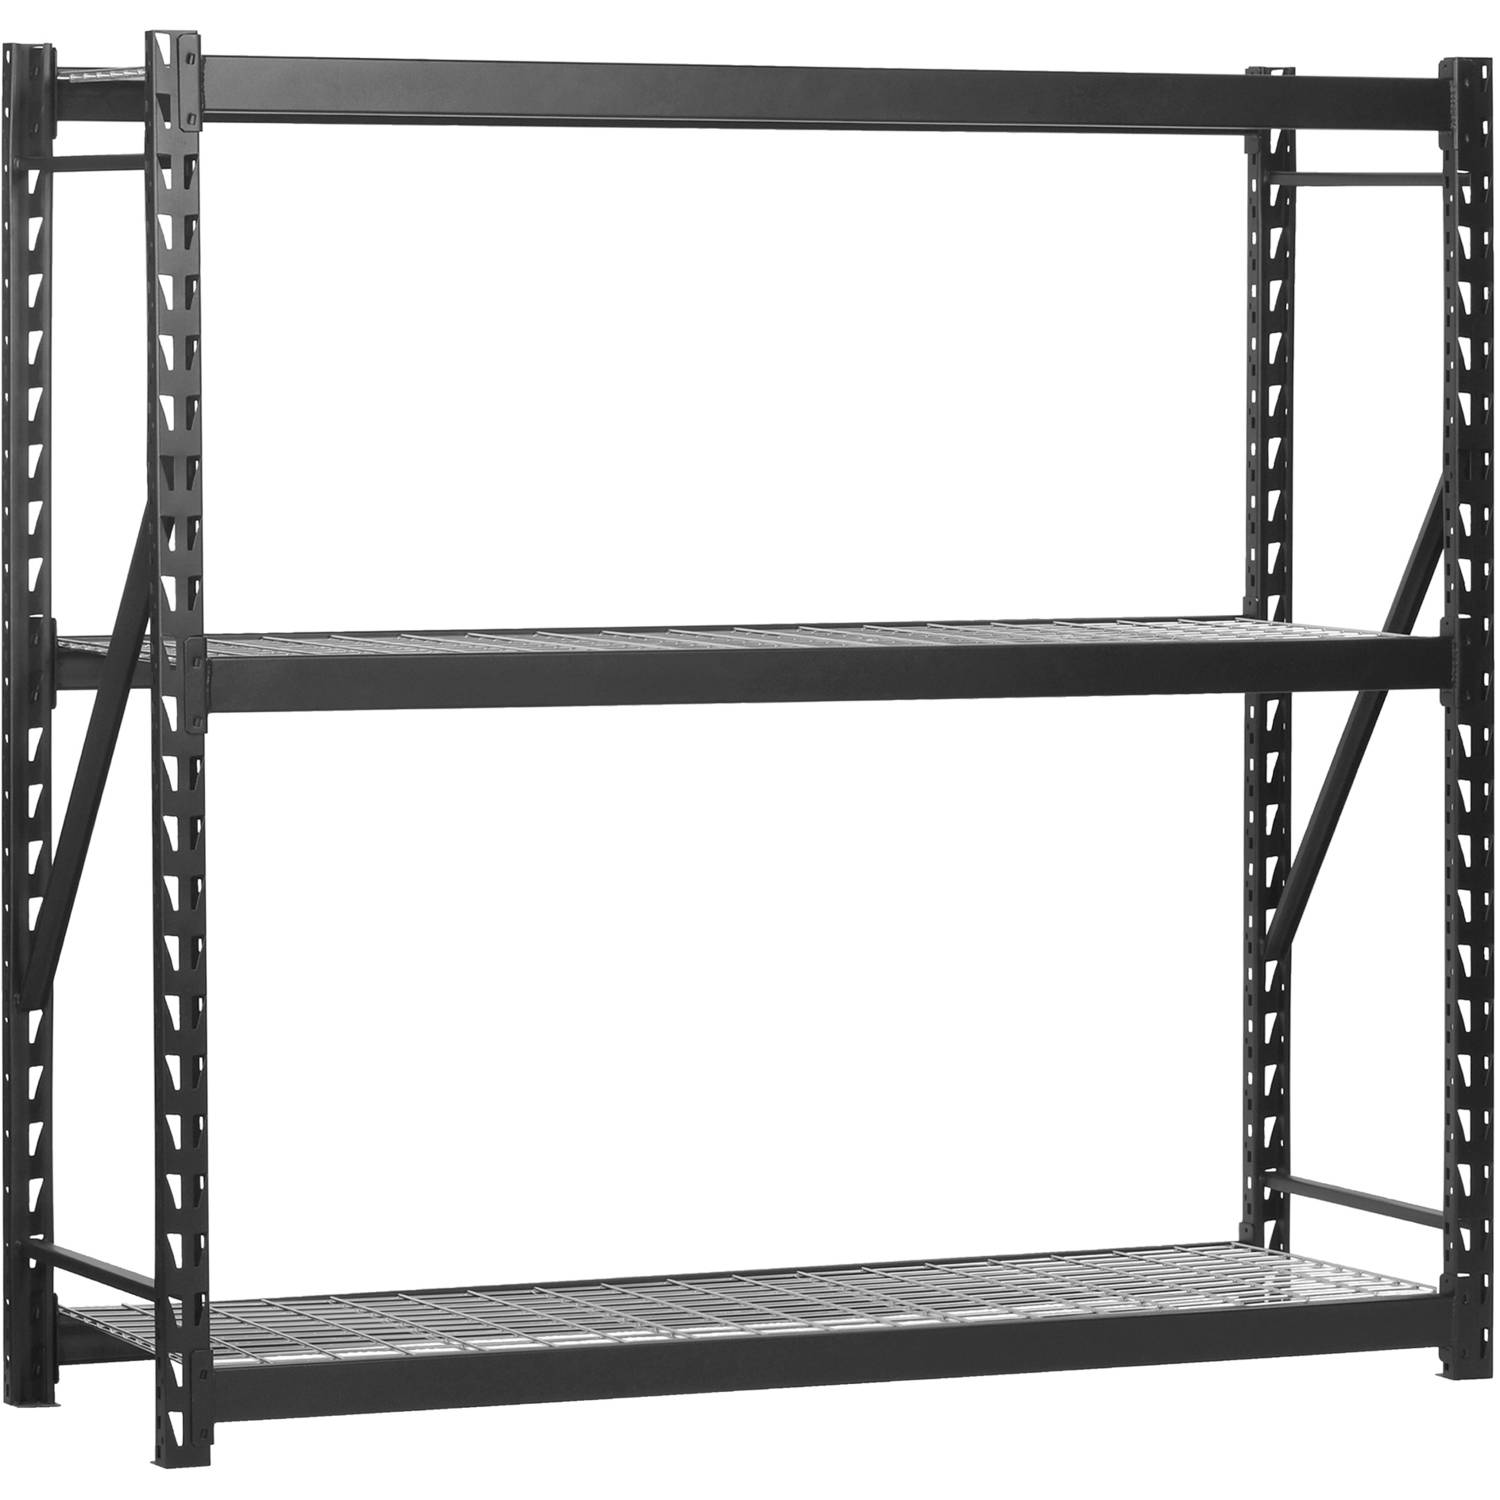 Muscle Rack 77"W x 24"D x 72"H 3-Tier Steel Welded Storage Rack, 4,500 lb. Total Capacity; Black - image 1 of 4